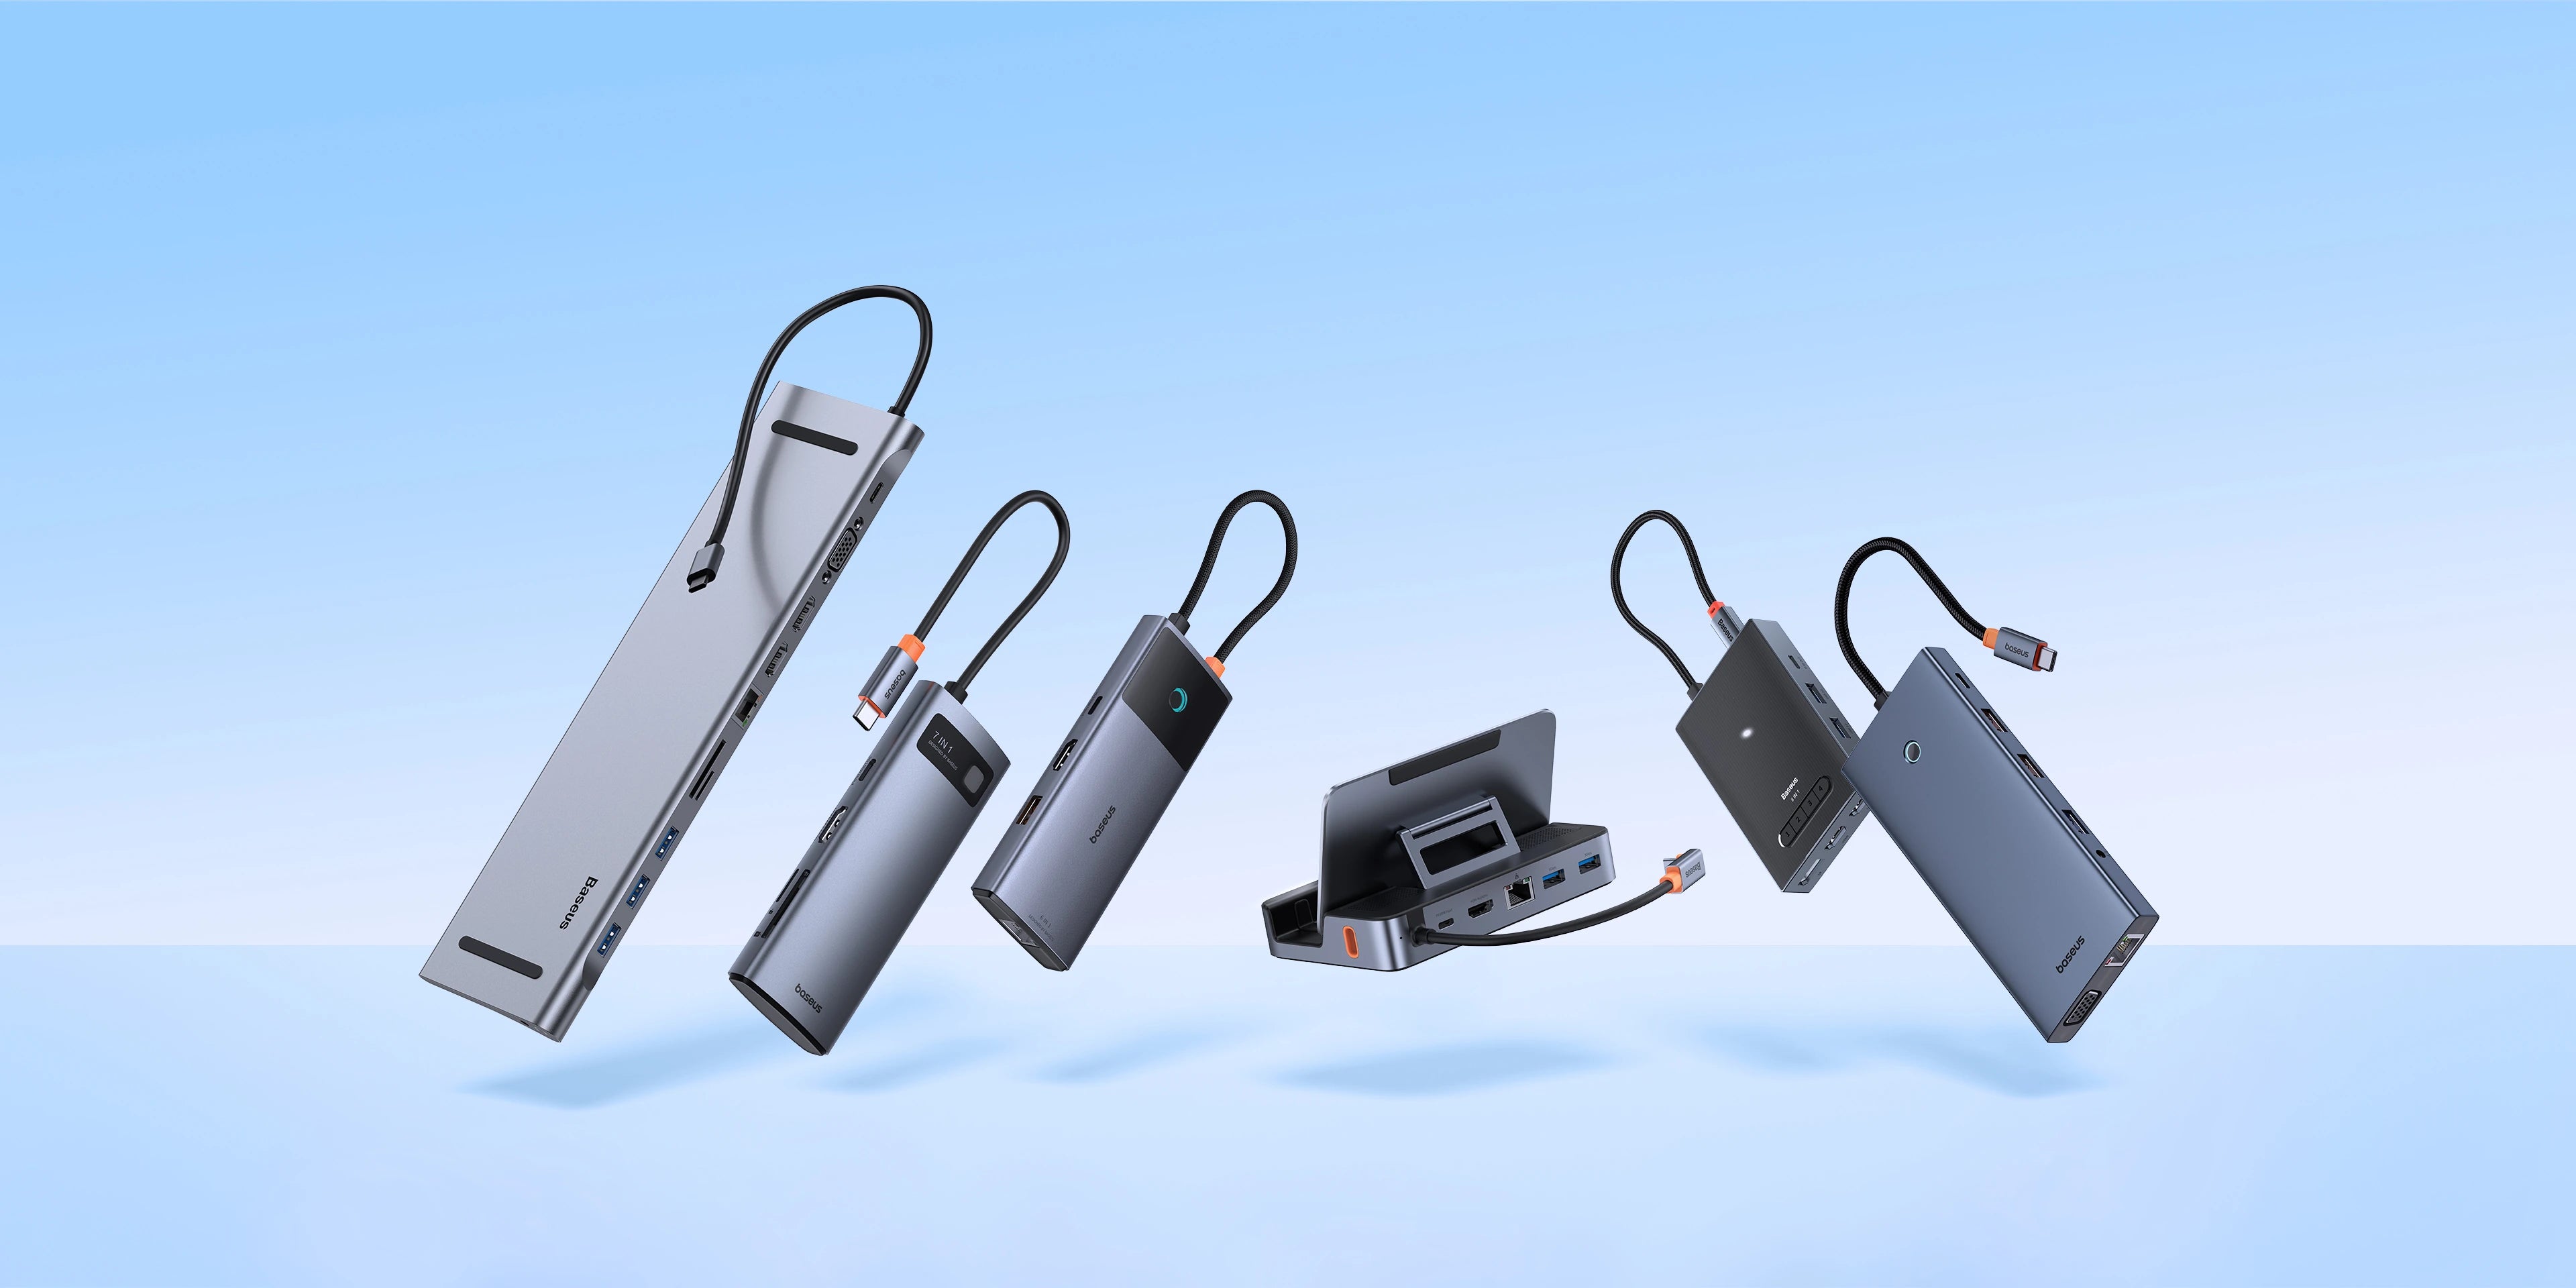 Baseus USB Hubs and Docks